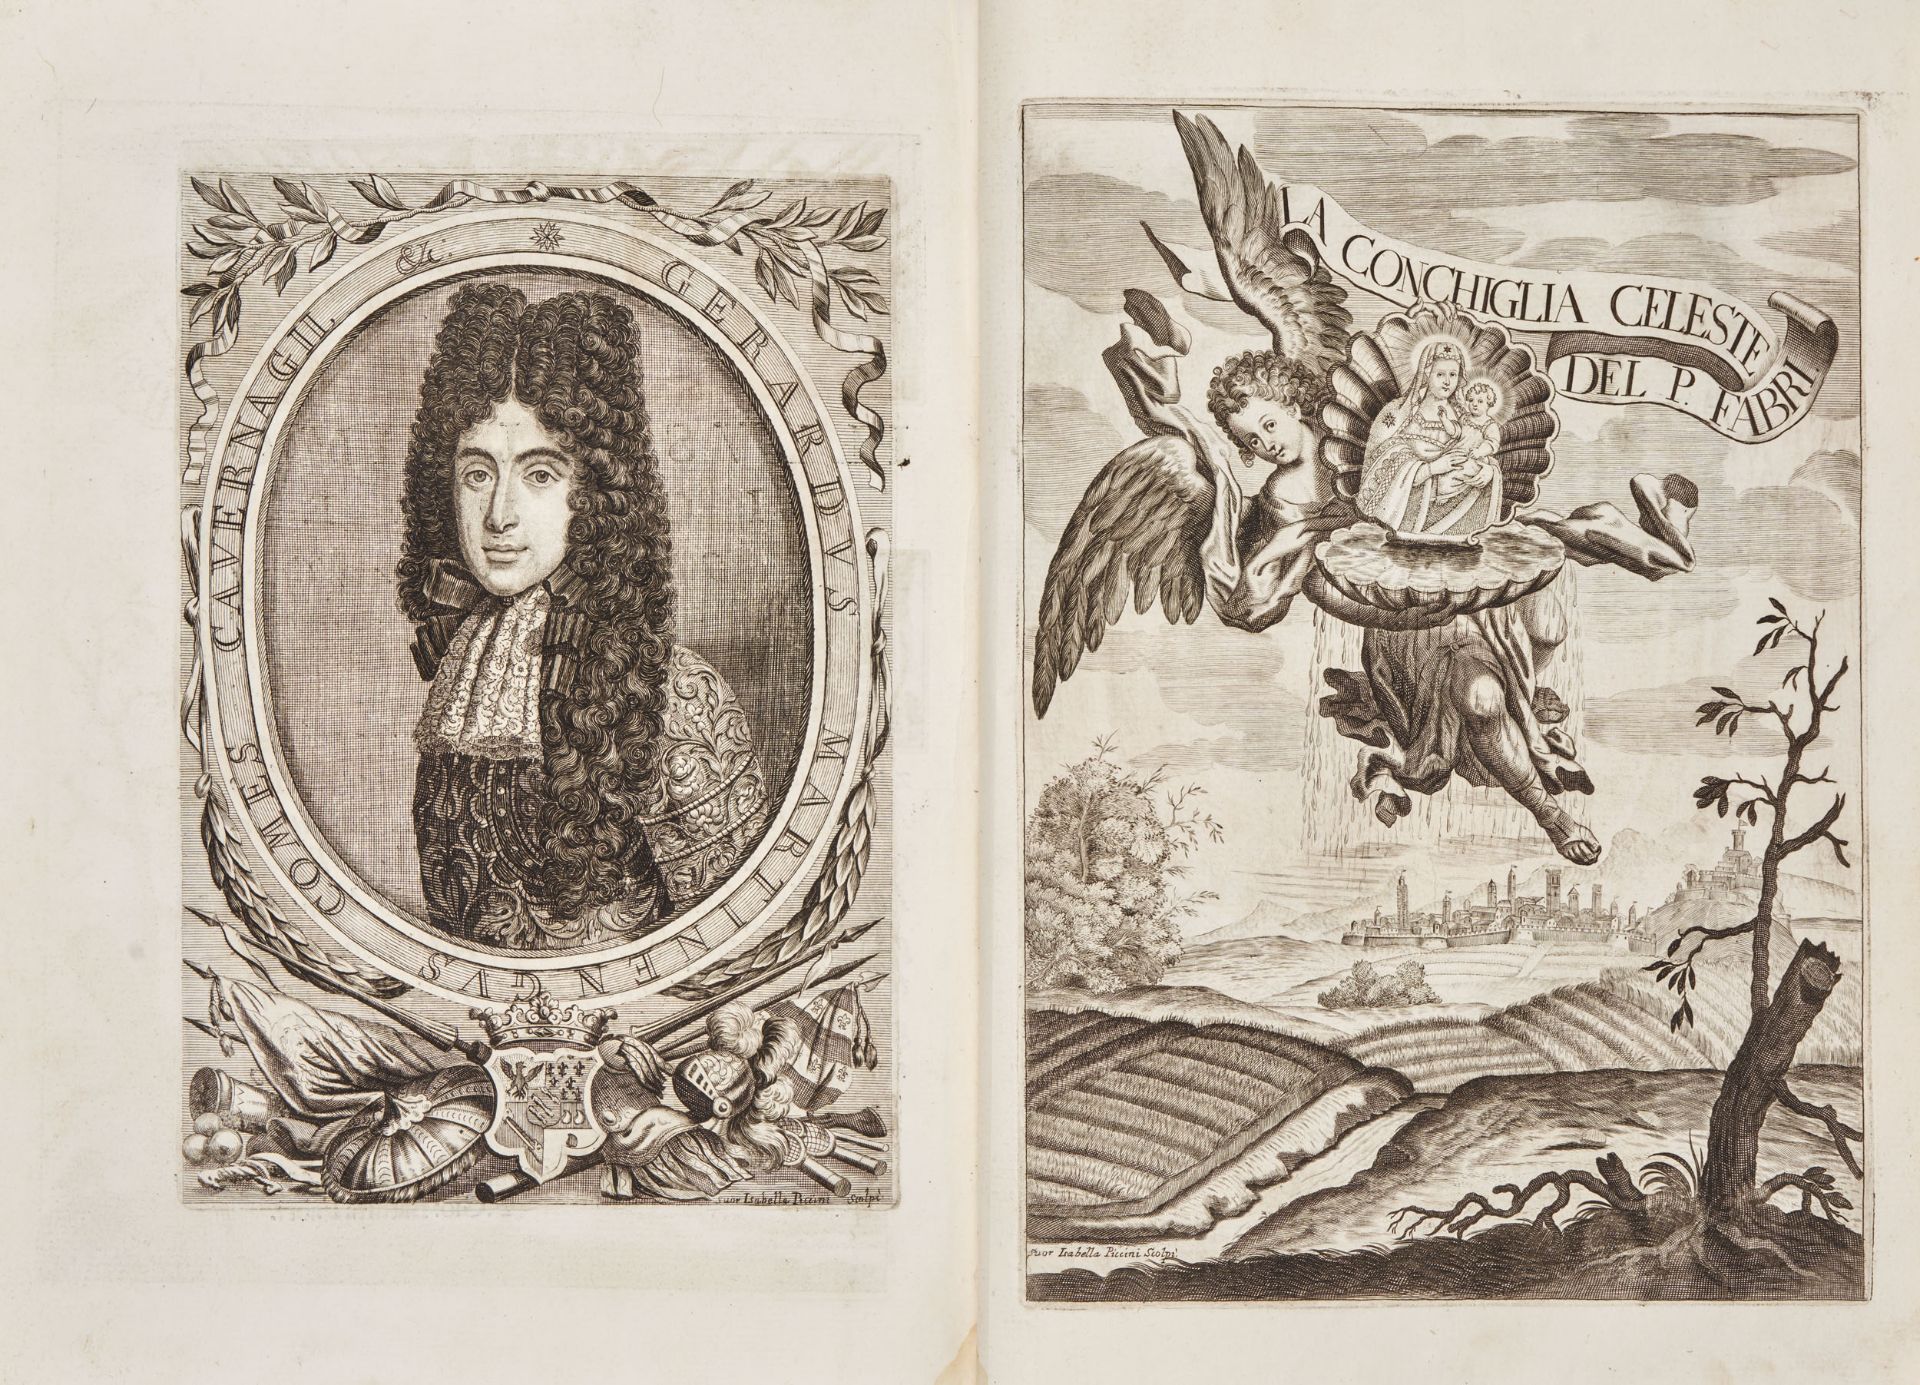 PICCINI, Isabella (1644-1732); FABRI, Giovanni Battista (18th). La conchiglia celeste. Venice: